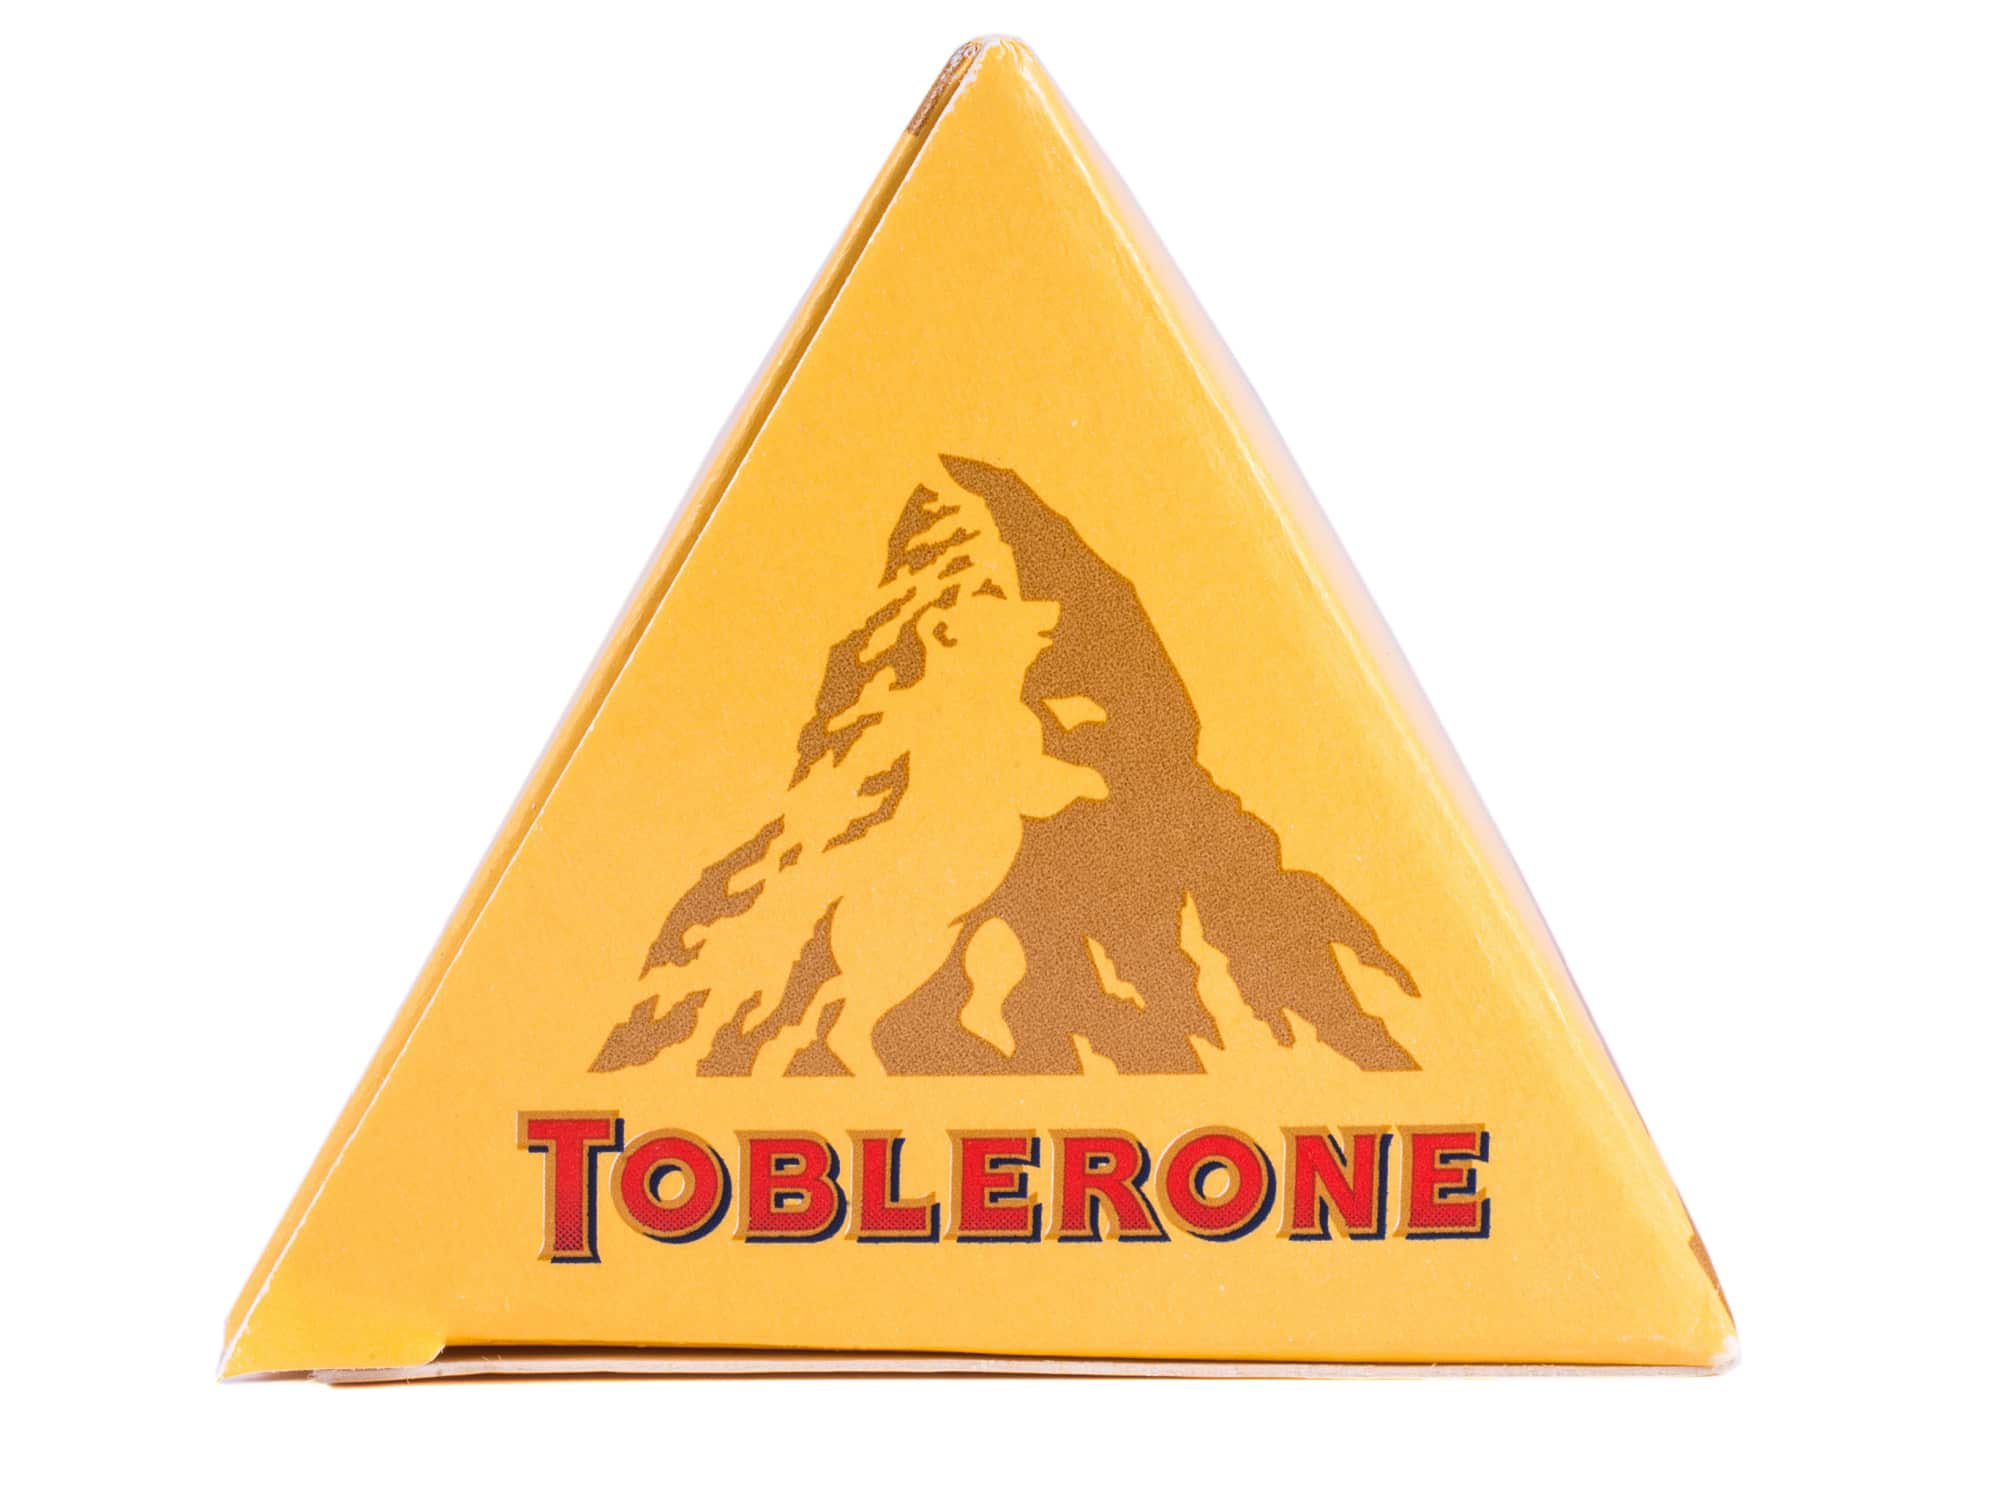  Αντίο, Toblerone Mountain: Το διάσημο λογότυπο της σοκολάτας αλλάζει - μάθετε γιατί!